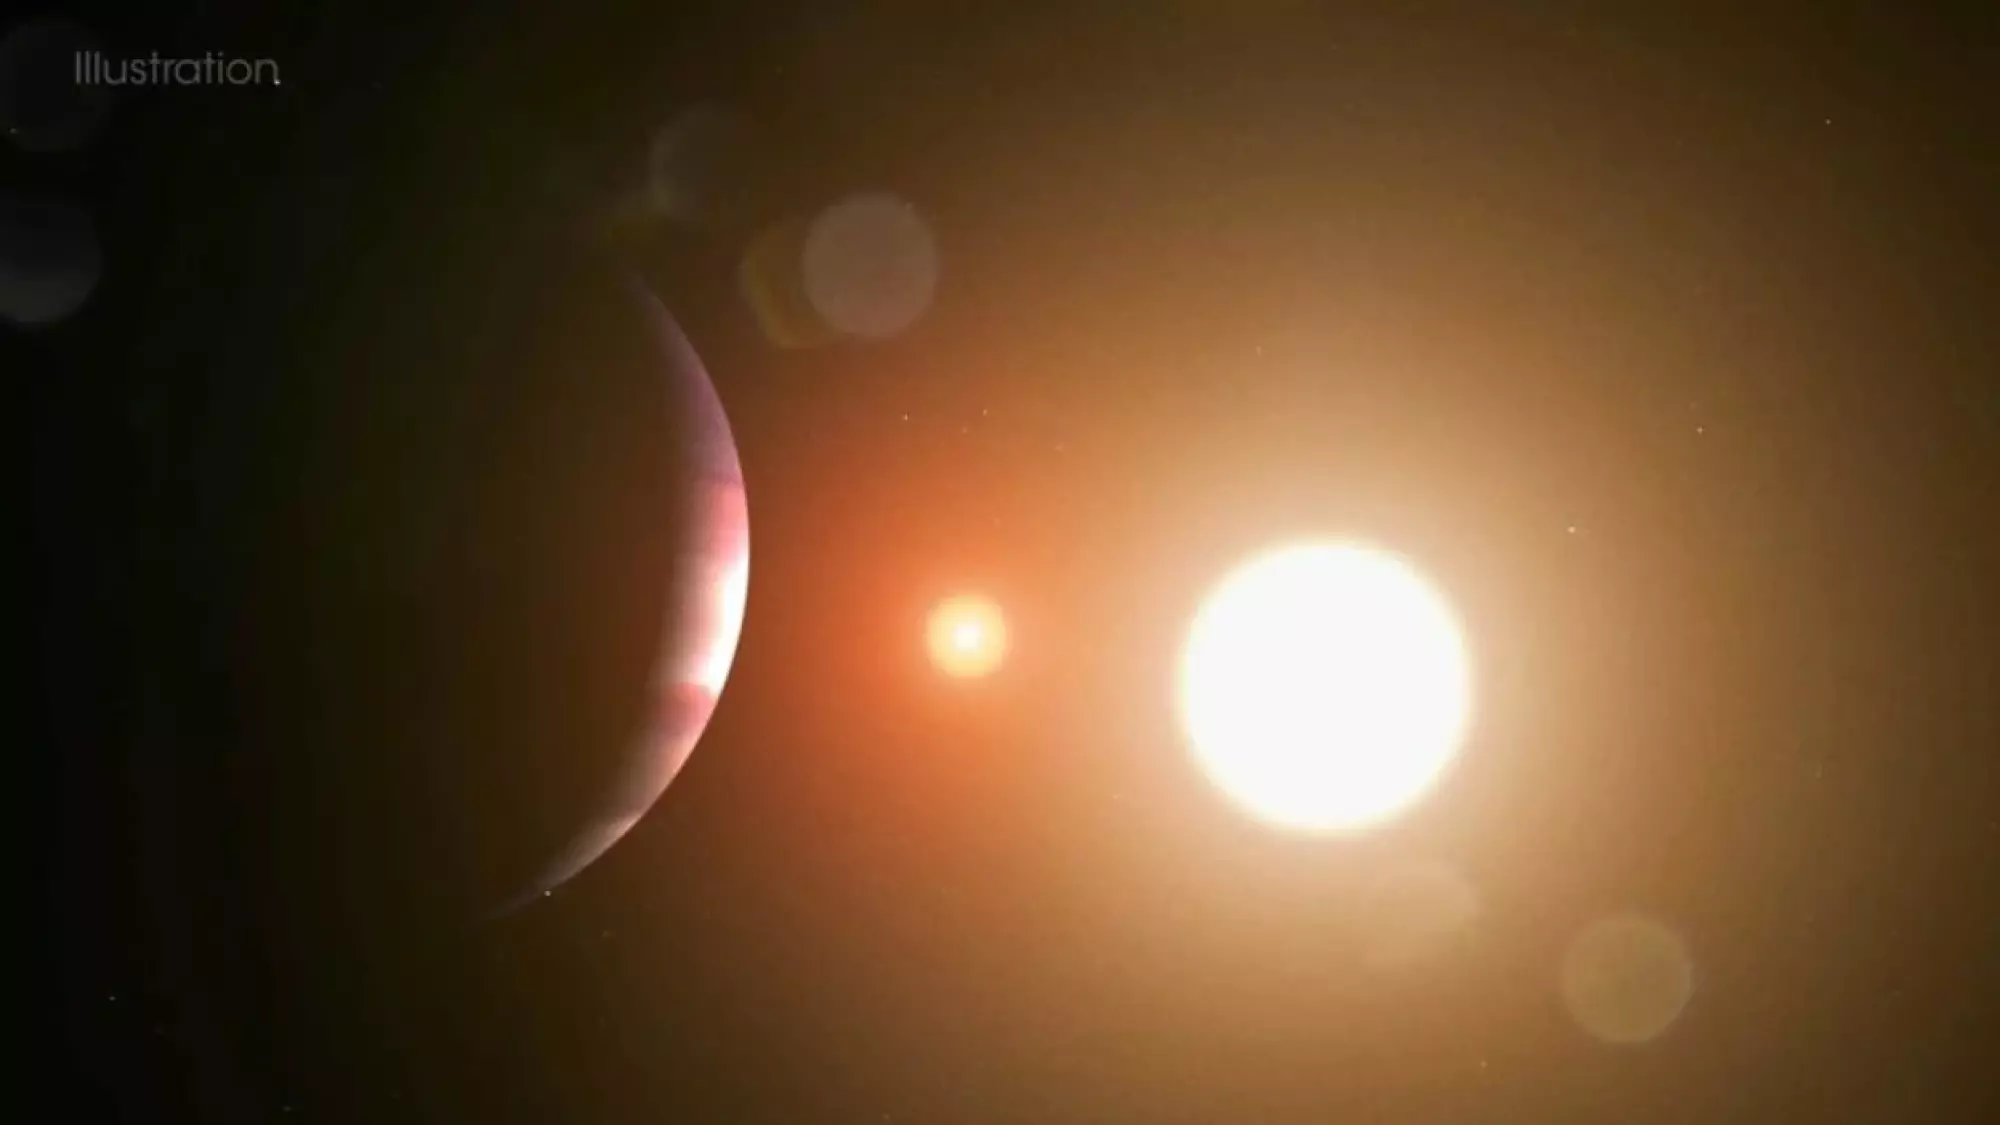 Ученые обнаружили мир, вращающийся вокруг двух звезд, очень похожий на вымышленный мир Татуин, родную планету Люка Скайуокера в «Звездных войнах». Credit: NASA Goddard Space Flight Center / Chris Smith (USRA)